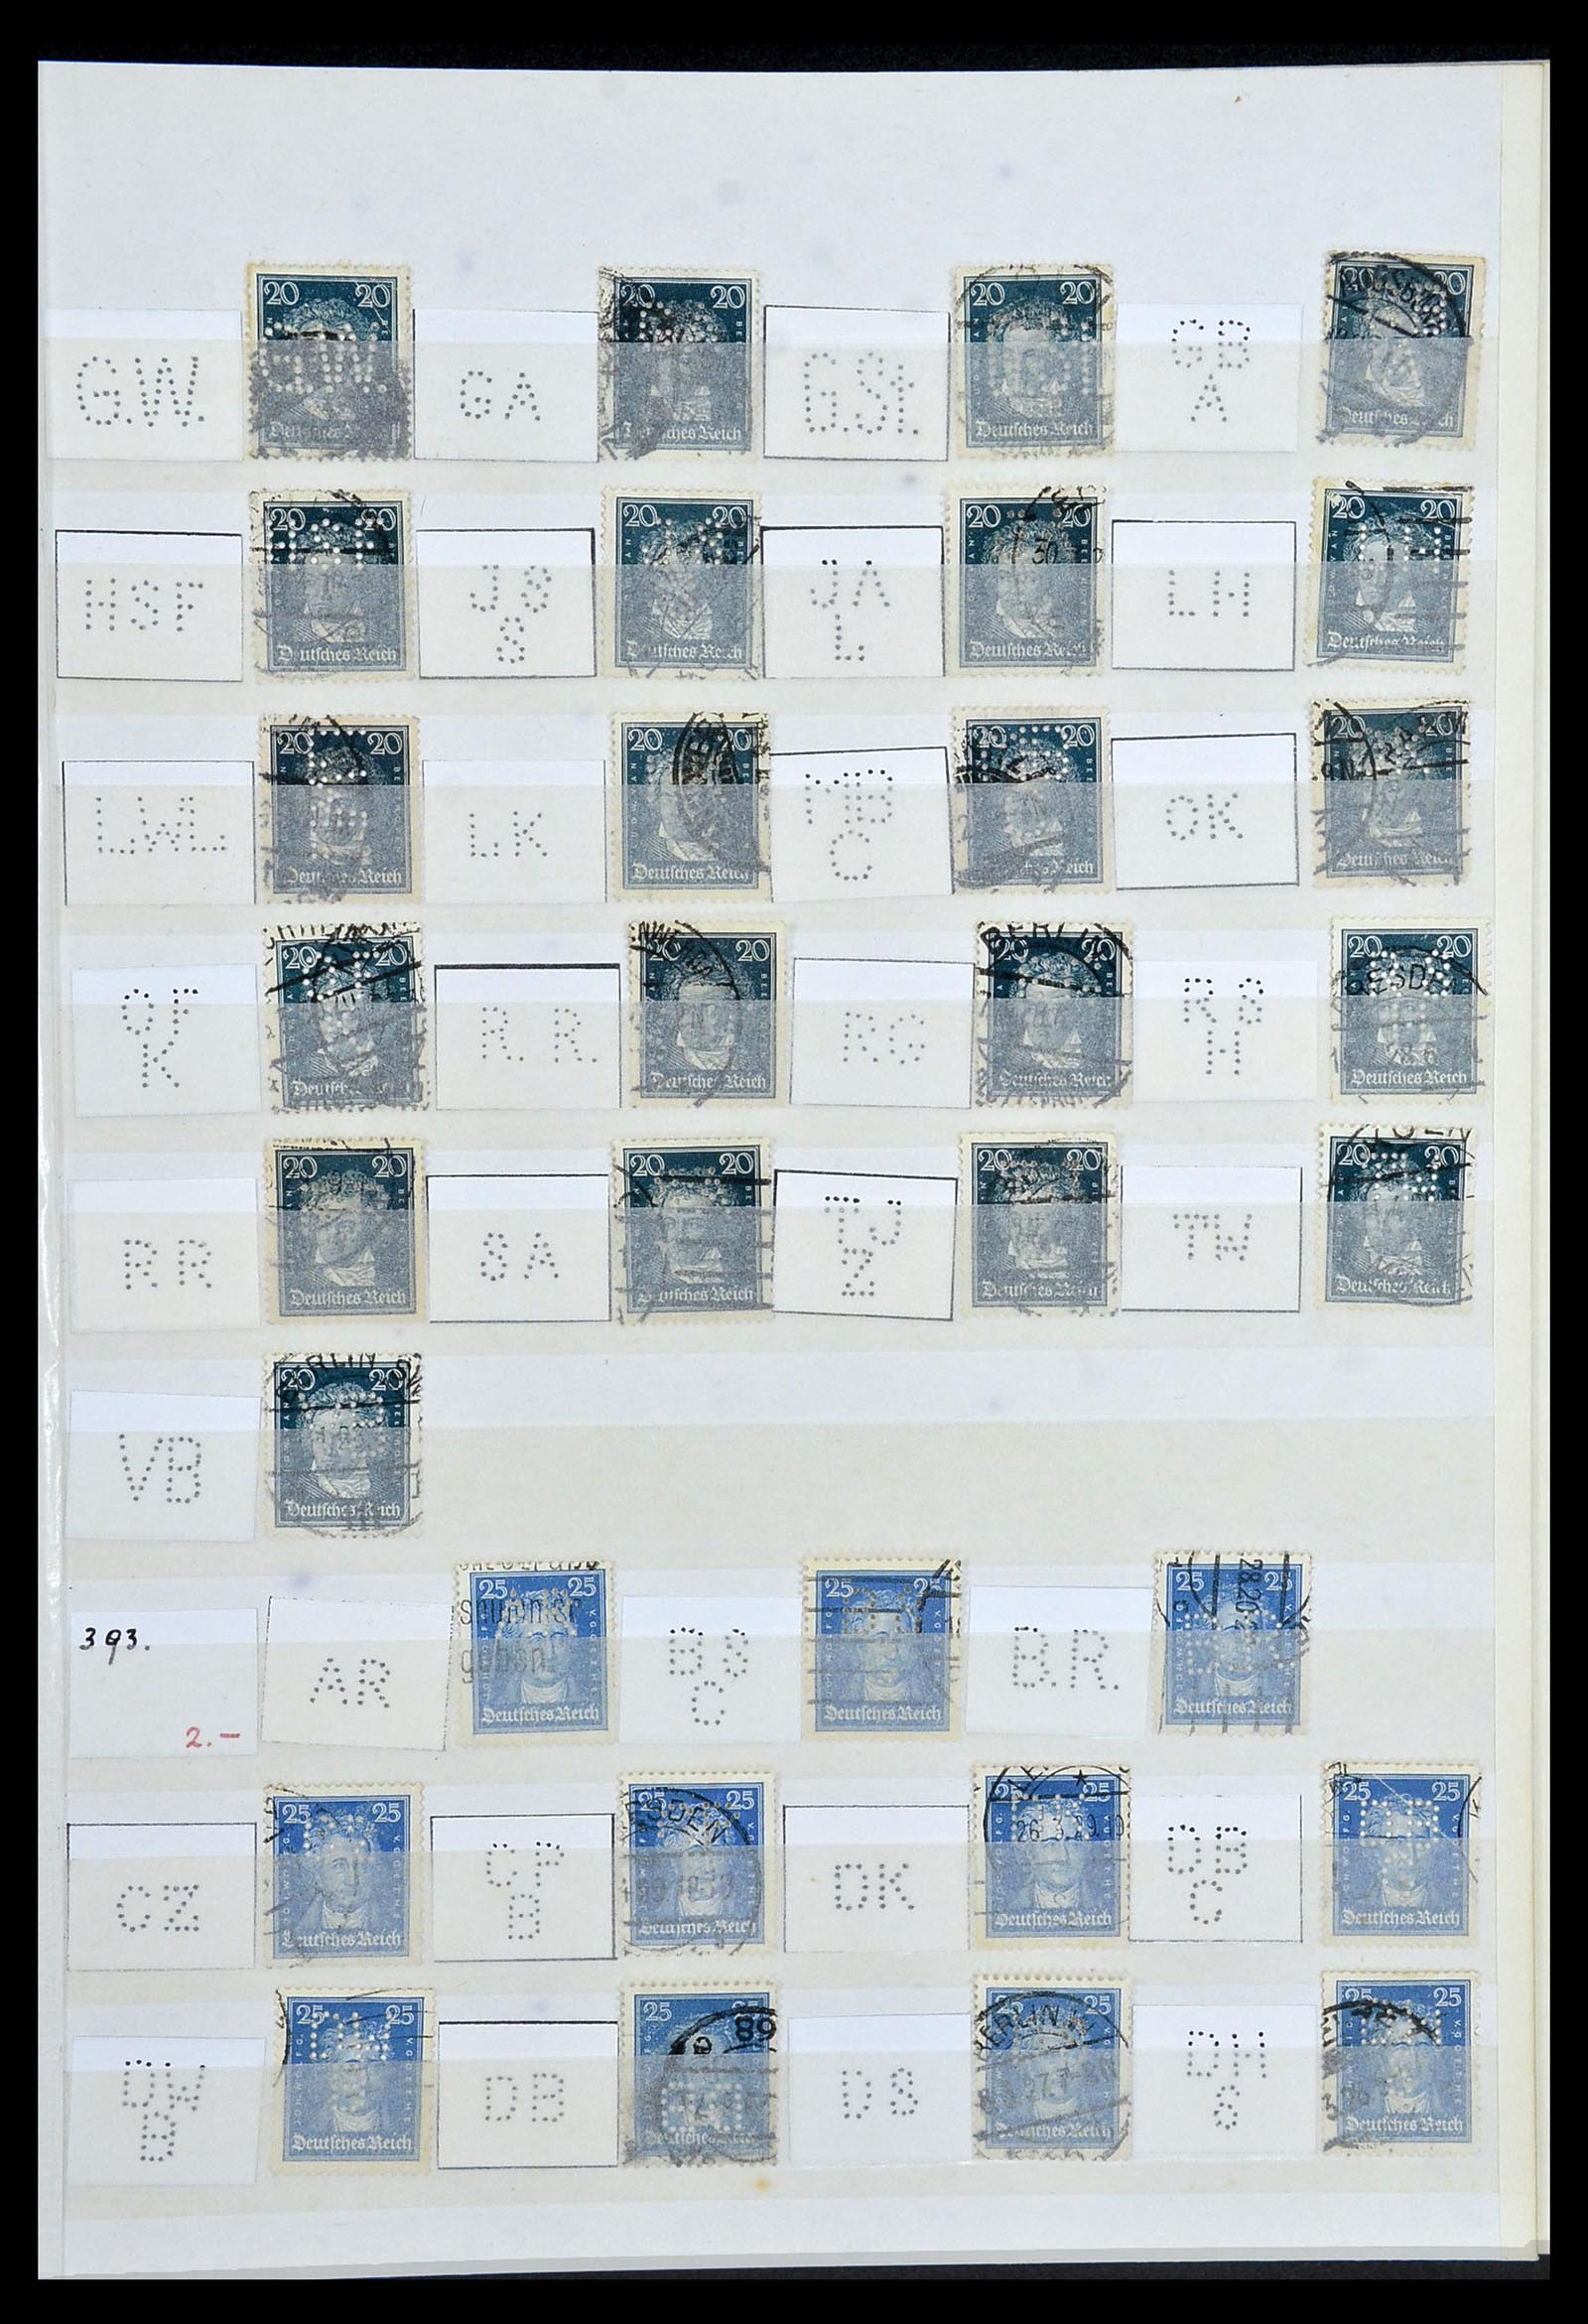 34071 009 - Stamp collection 34071 German Reich perfins 1923-1930.